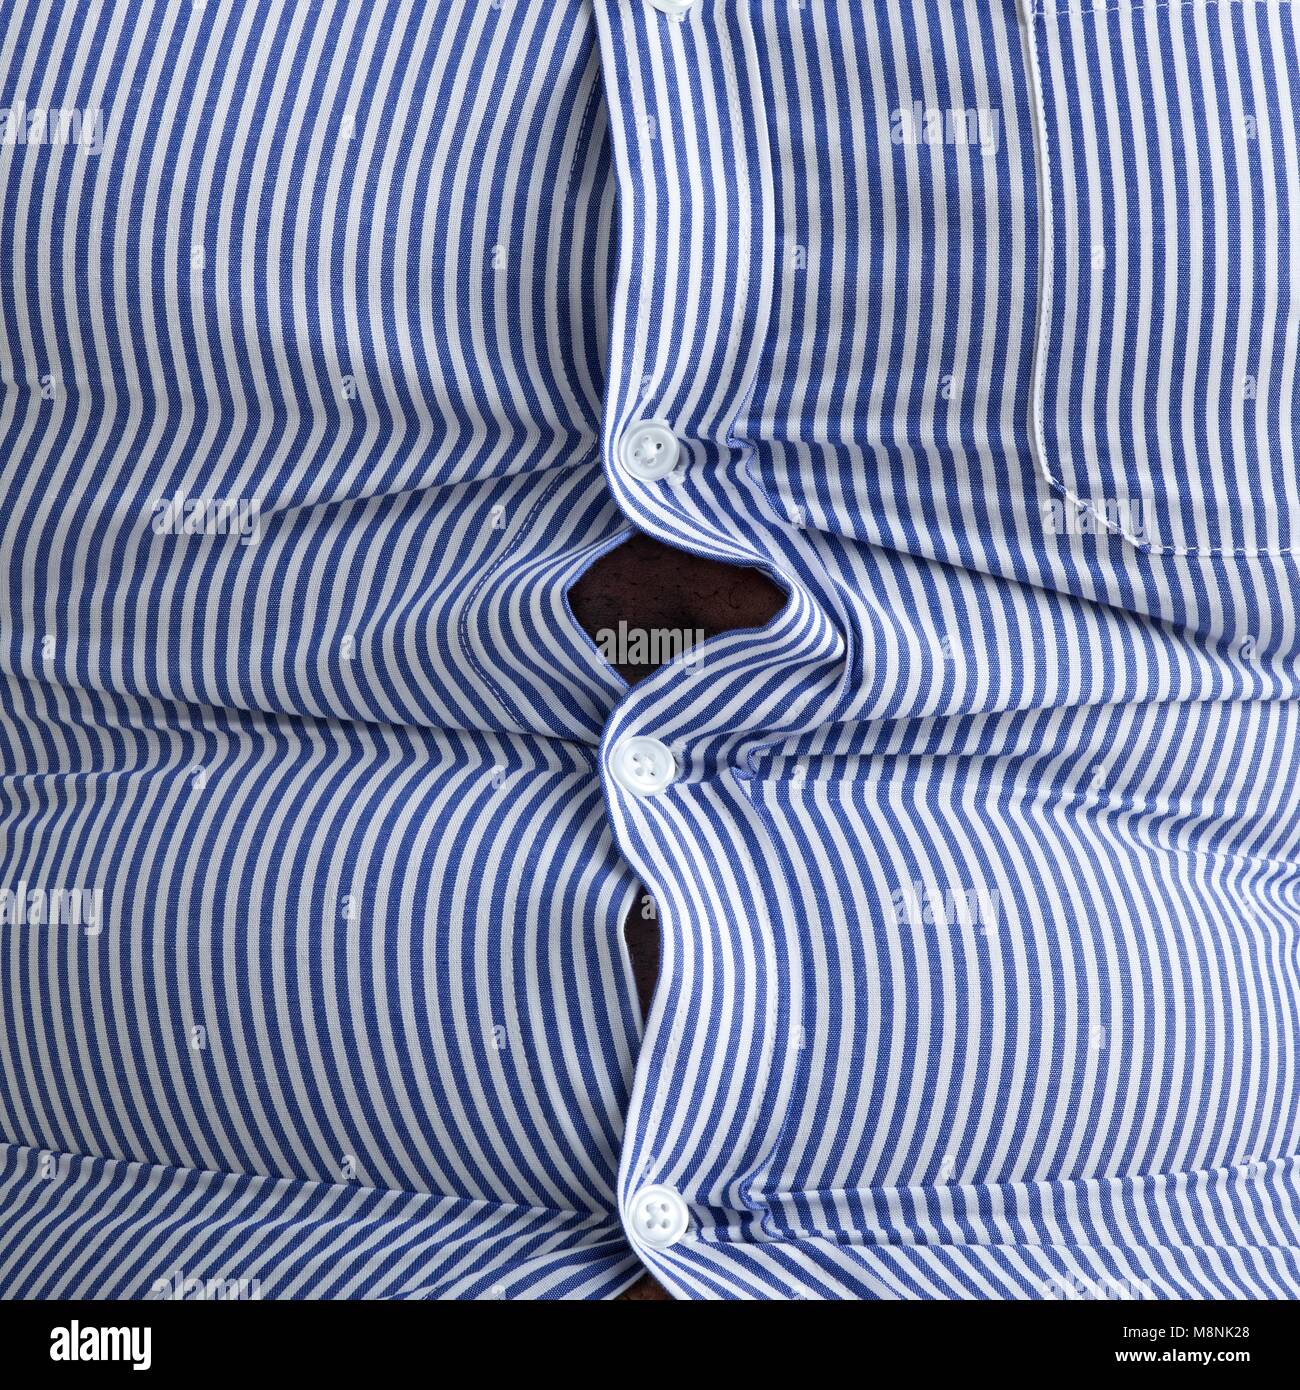 Sobrepeso hombre vestido con camisa a rayas azules con botones saltones. Foto de stock